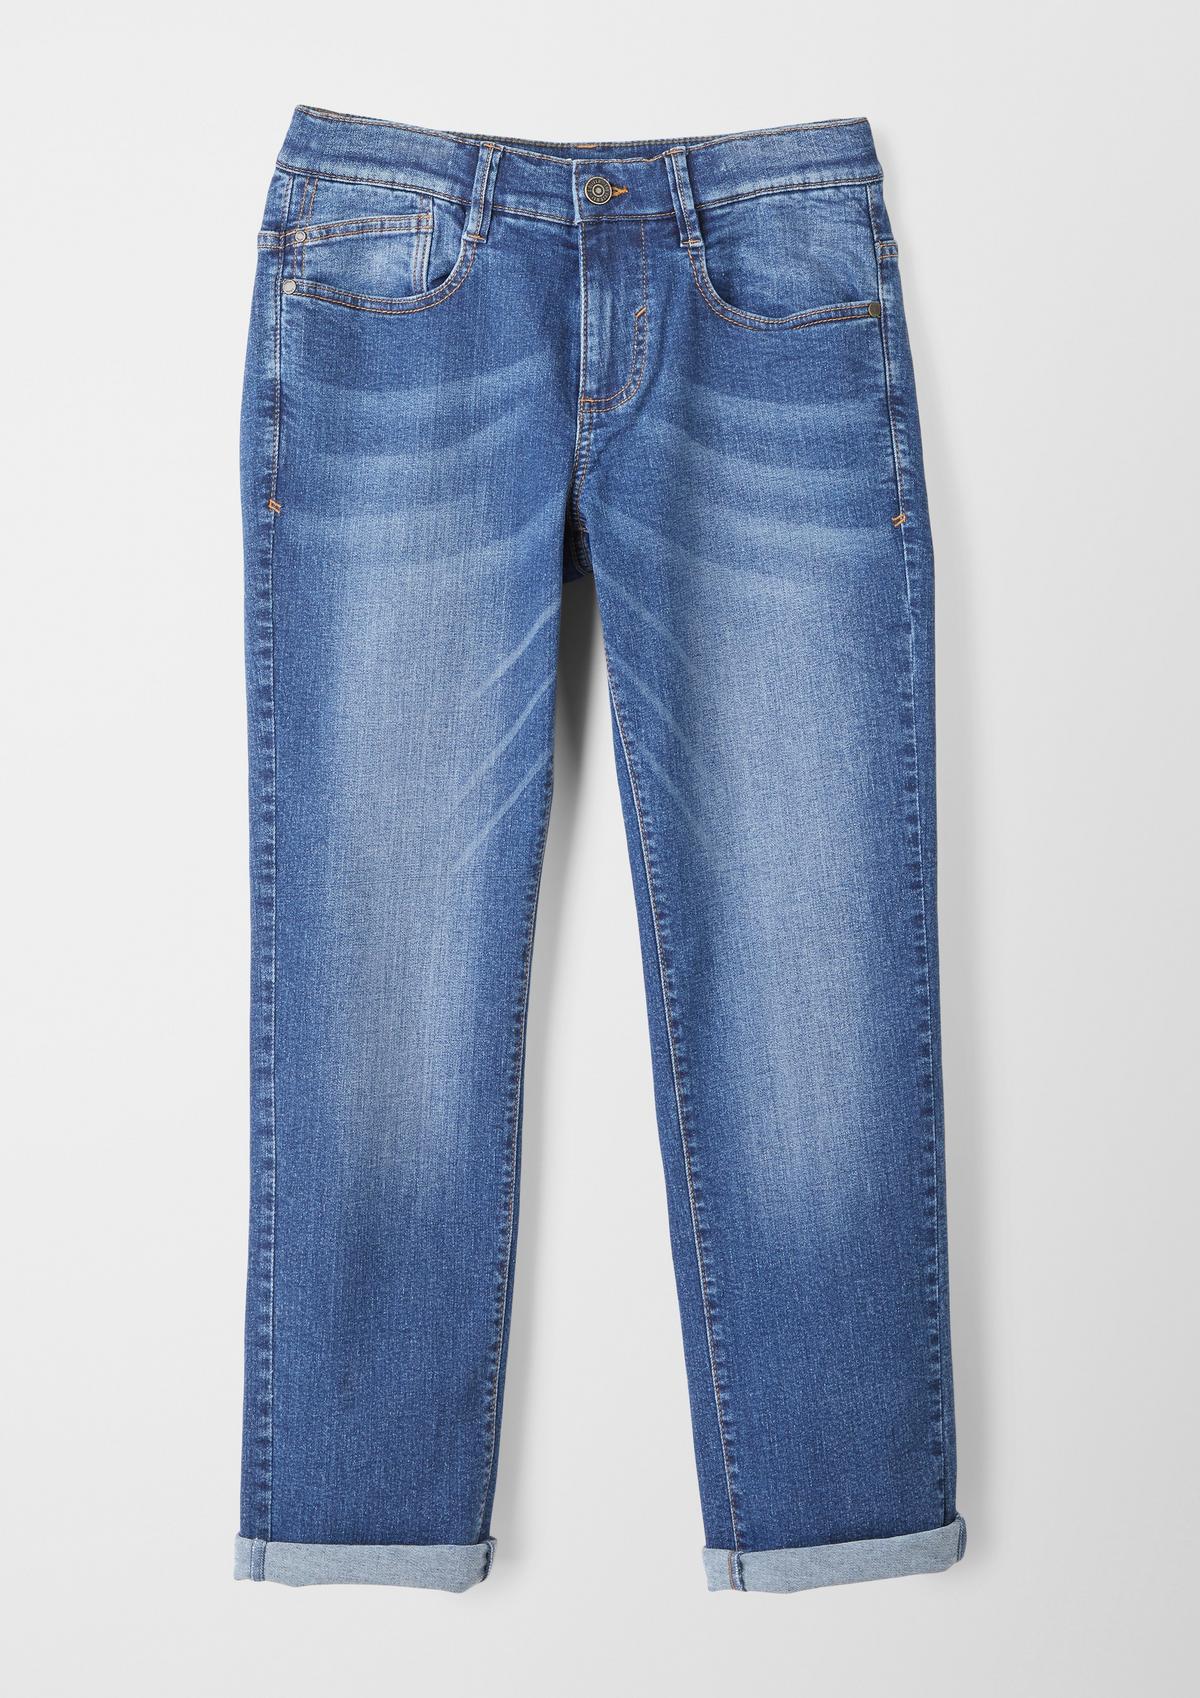 ozeanblau Jeans / Fit Mid Straight - Regular / Rise Leg / Pete